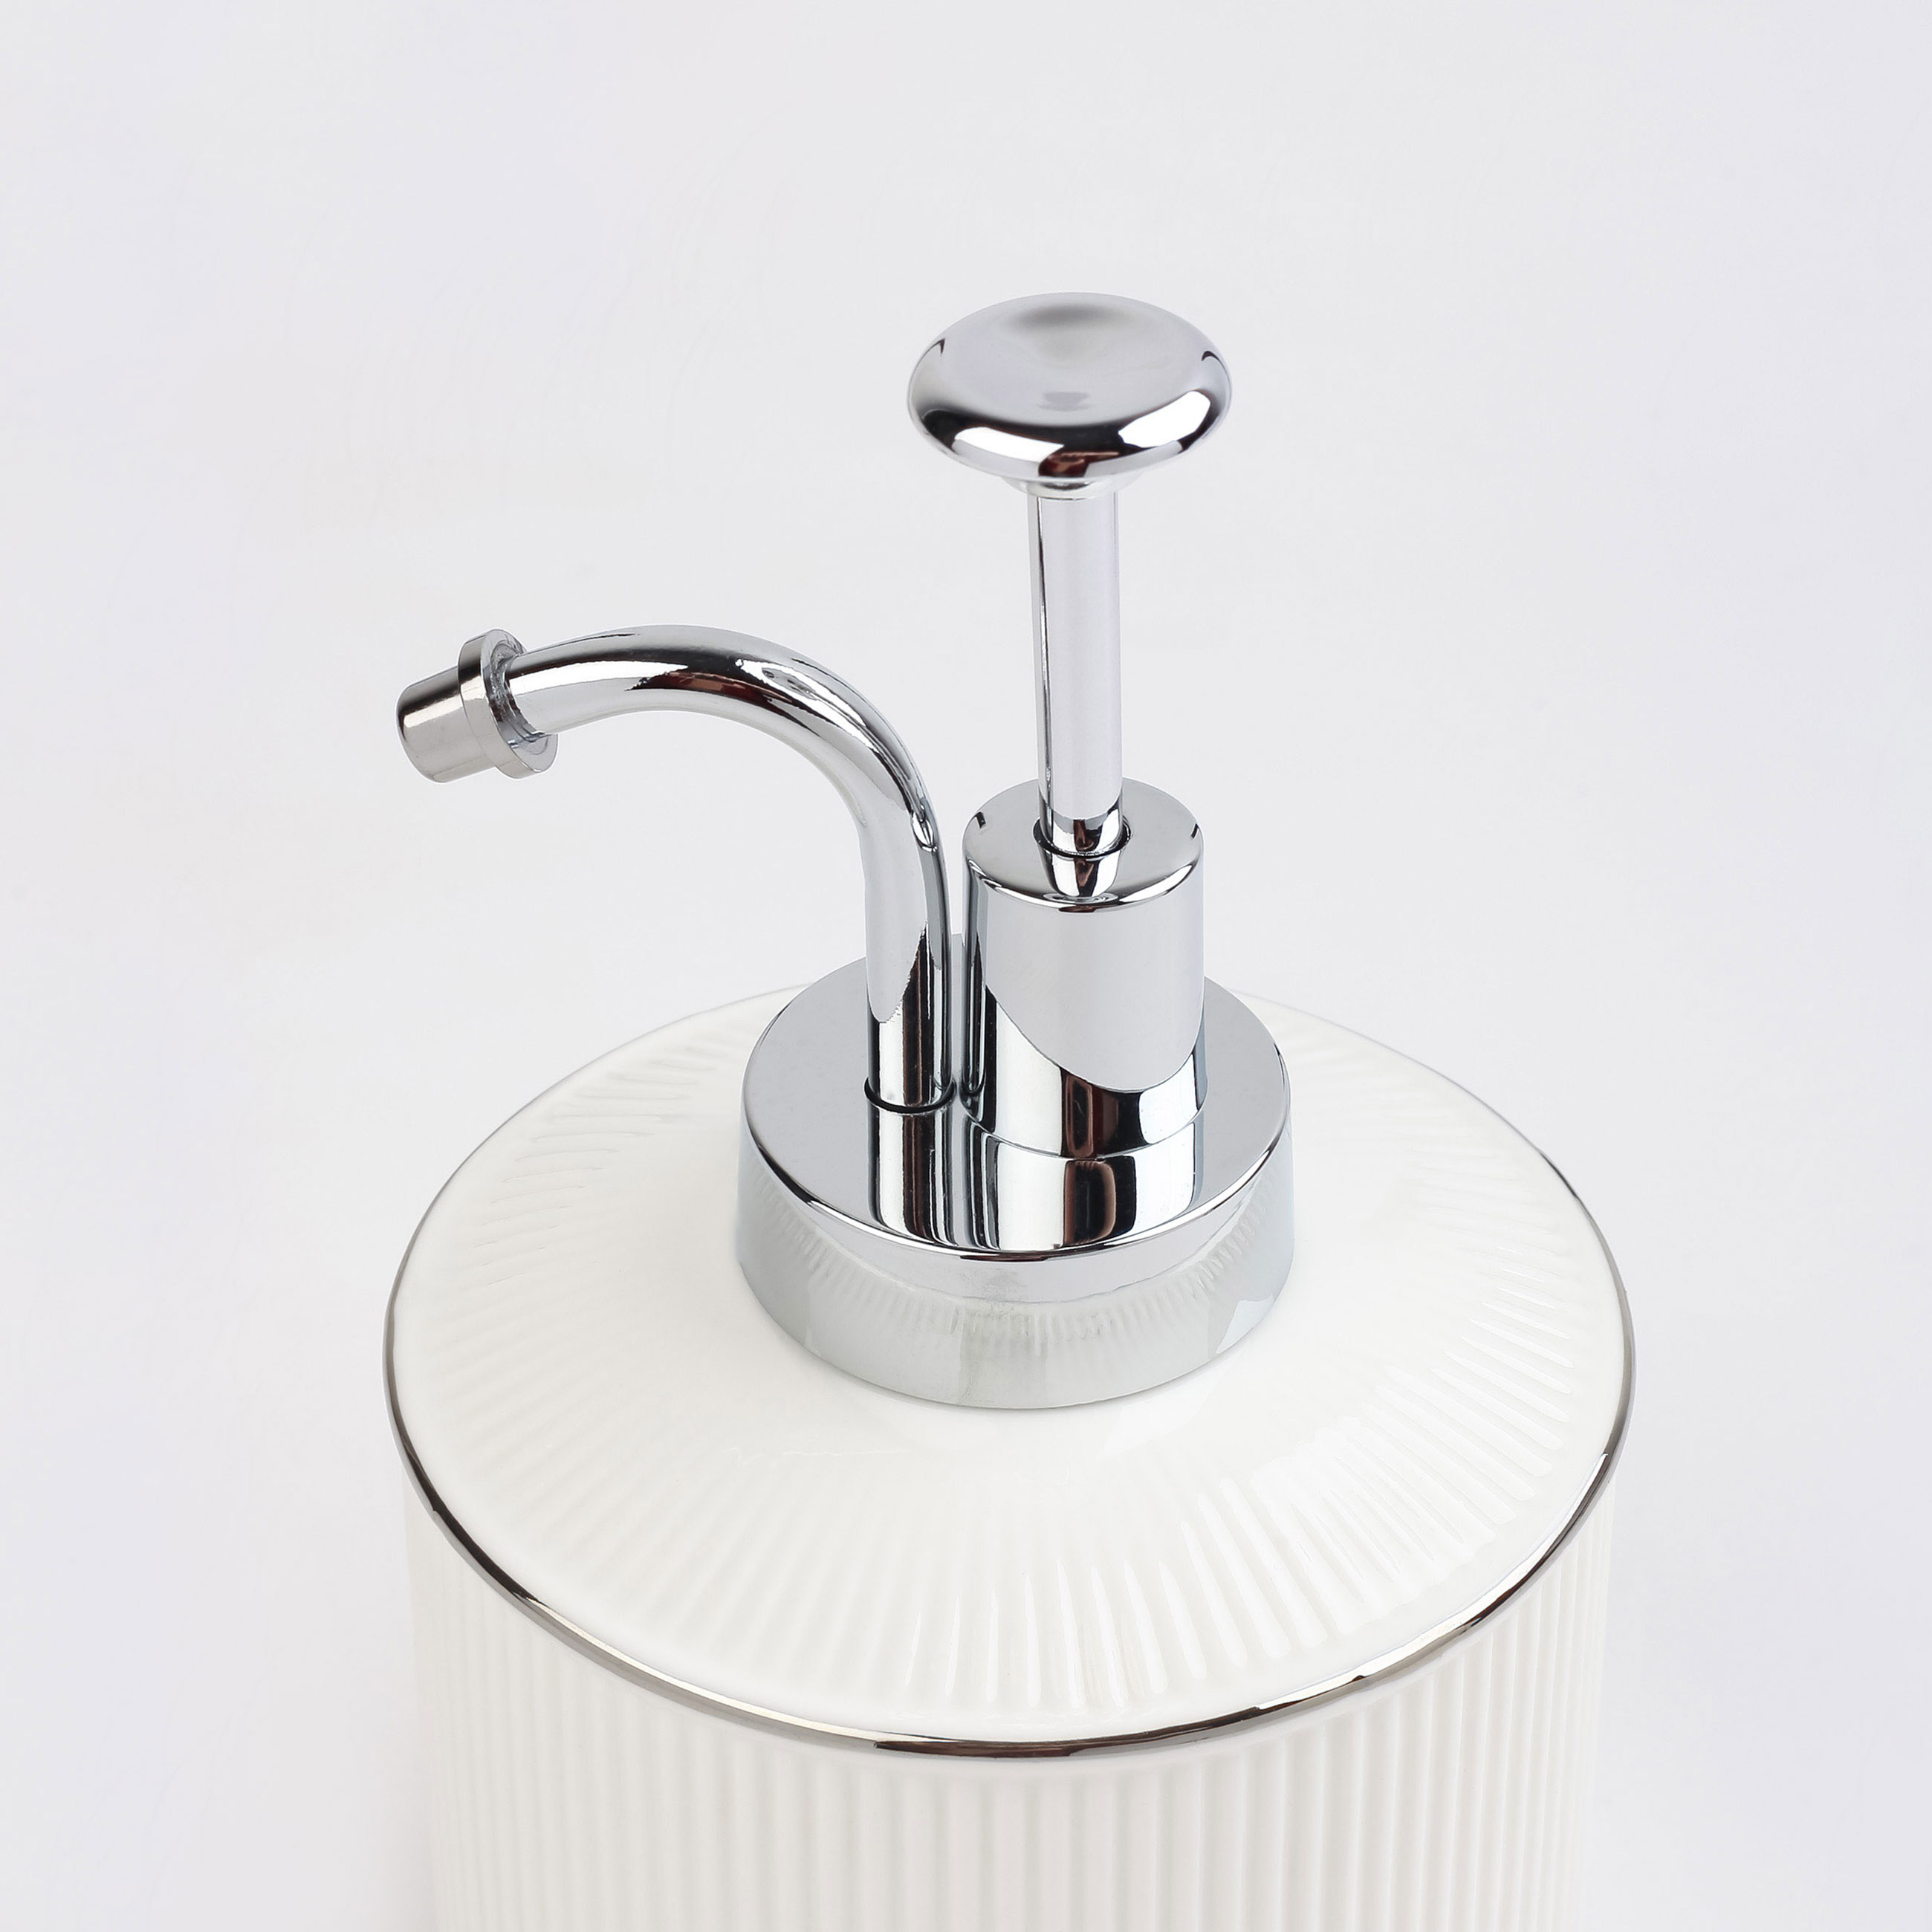 Liquid soap dispenser, 370 ml, ceramic / plastic, white, with silver edging, Kaliopa изображение № 2